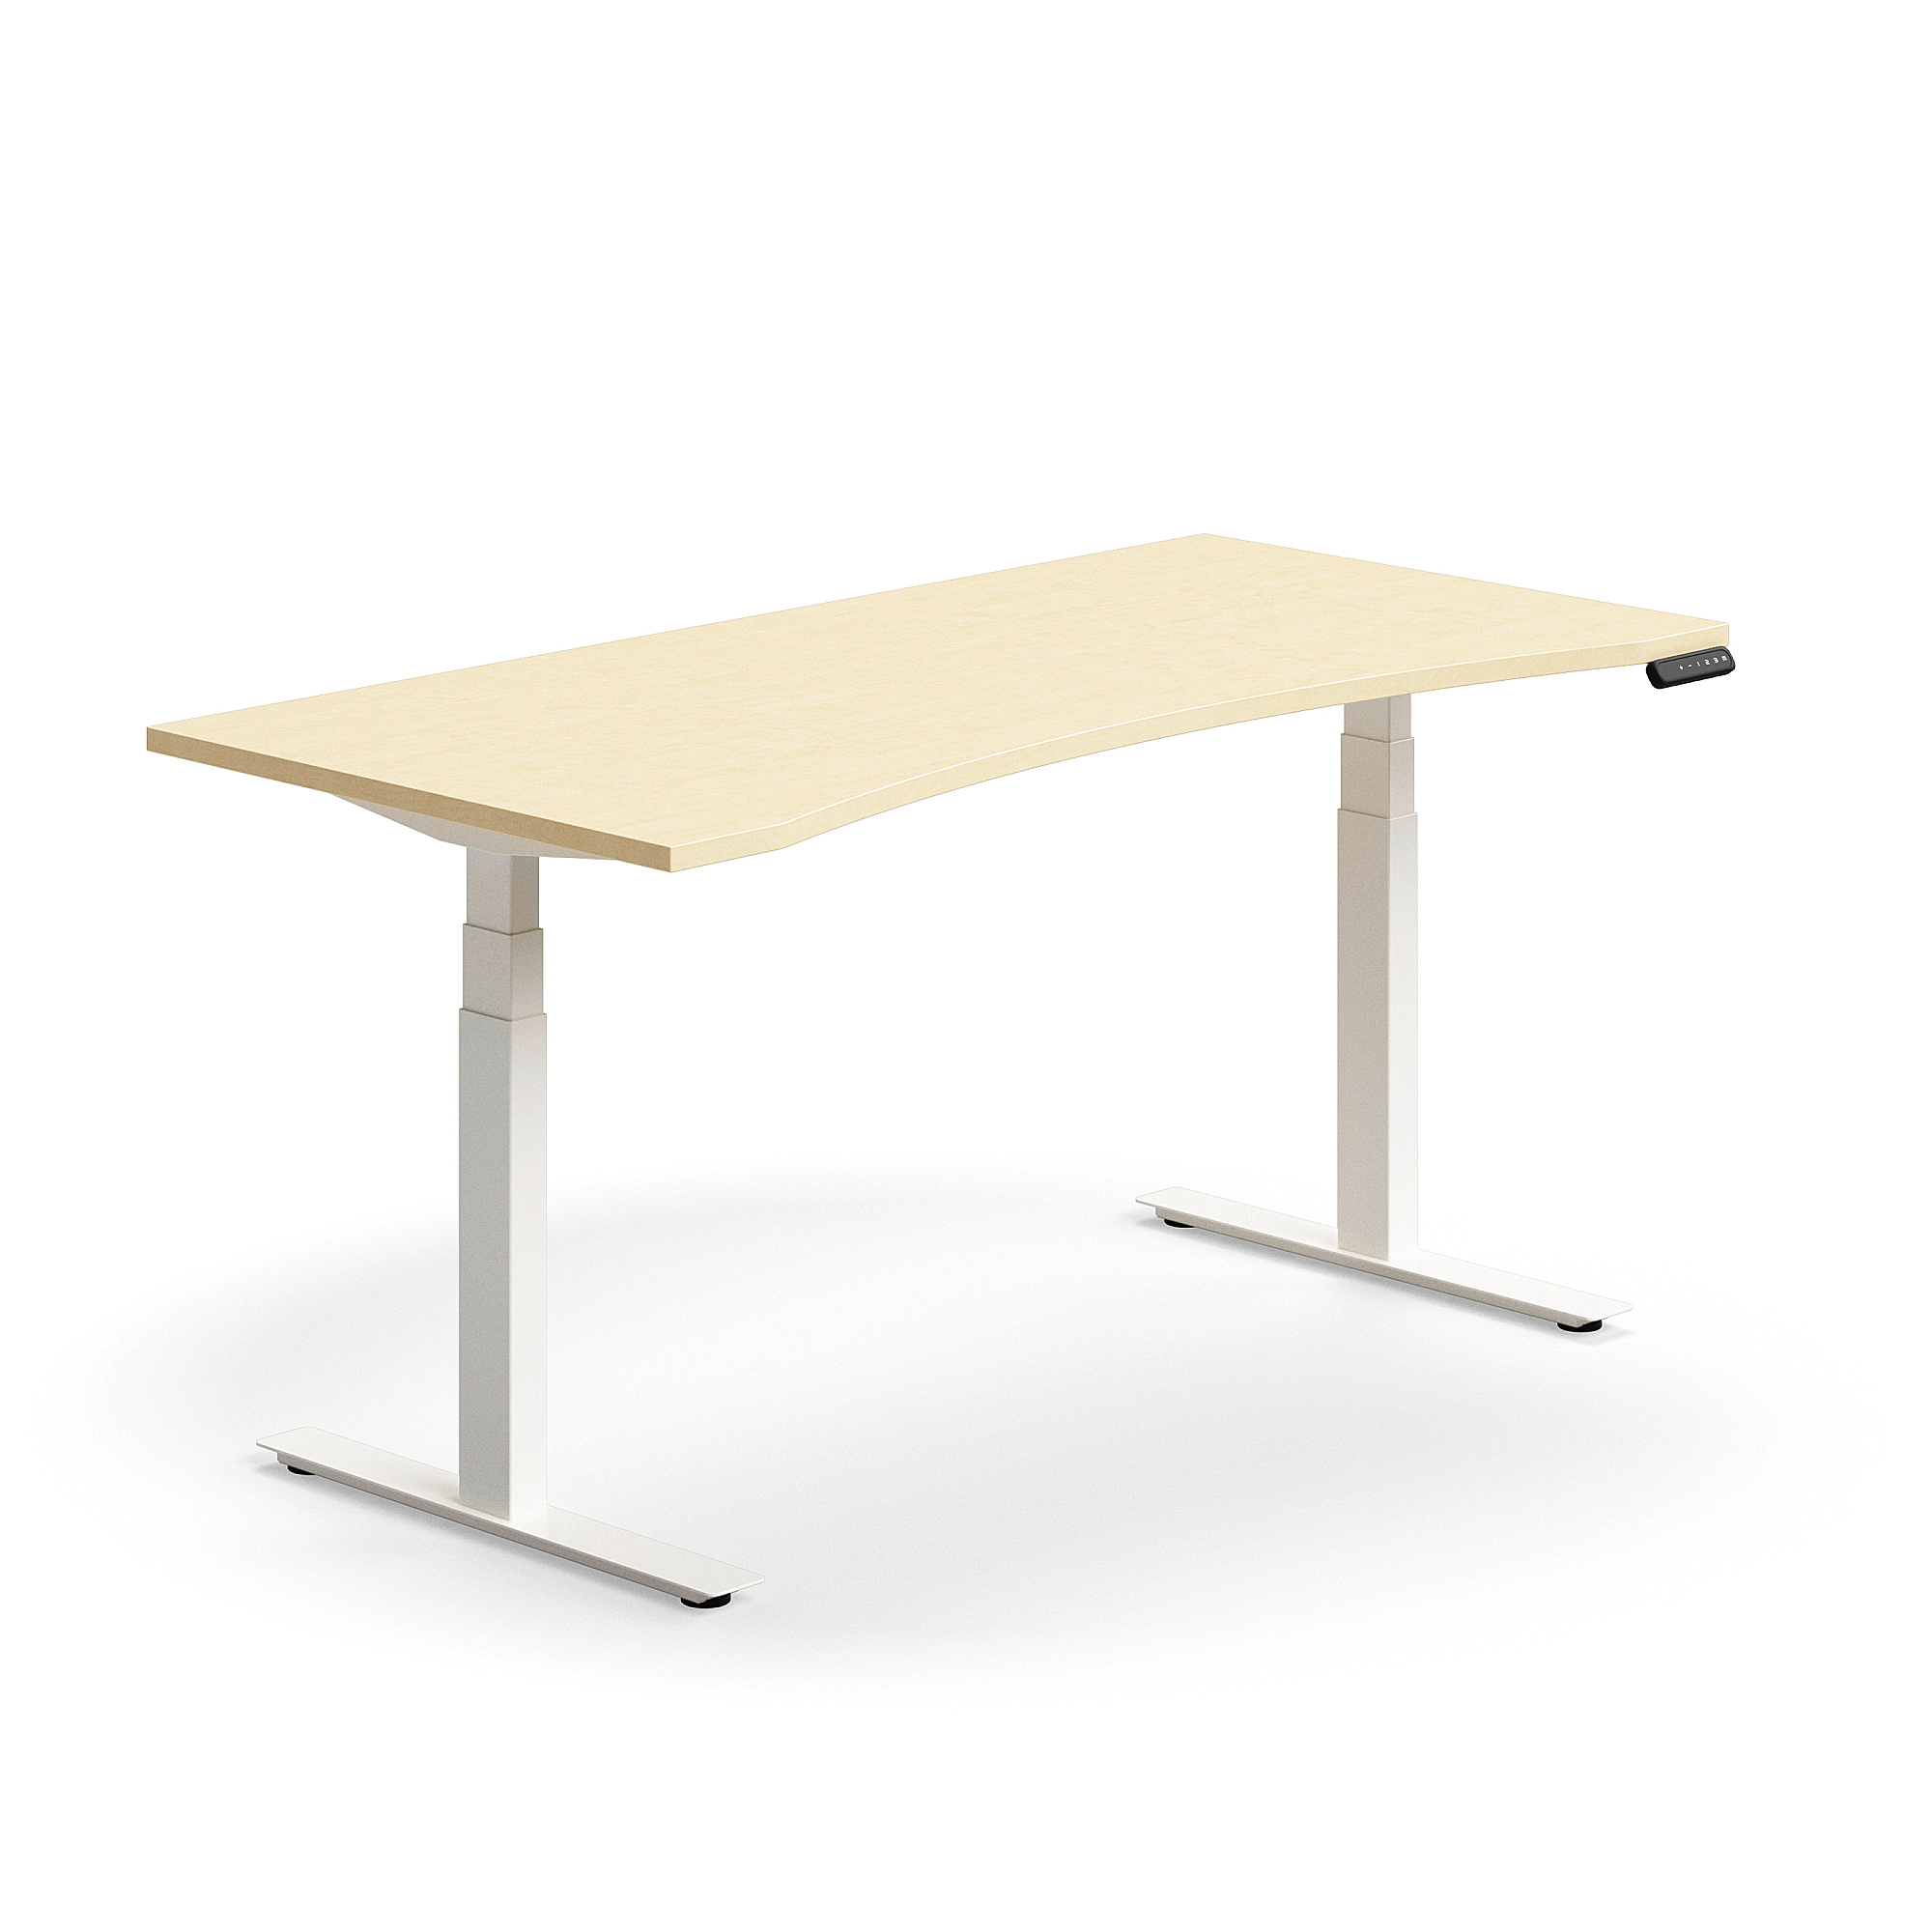 Výškově nastavitelný stůl QBUS, vykrojený, 1600x800 mm, bílá podnož, bříza